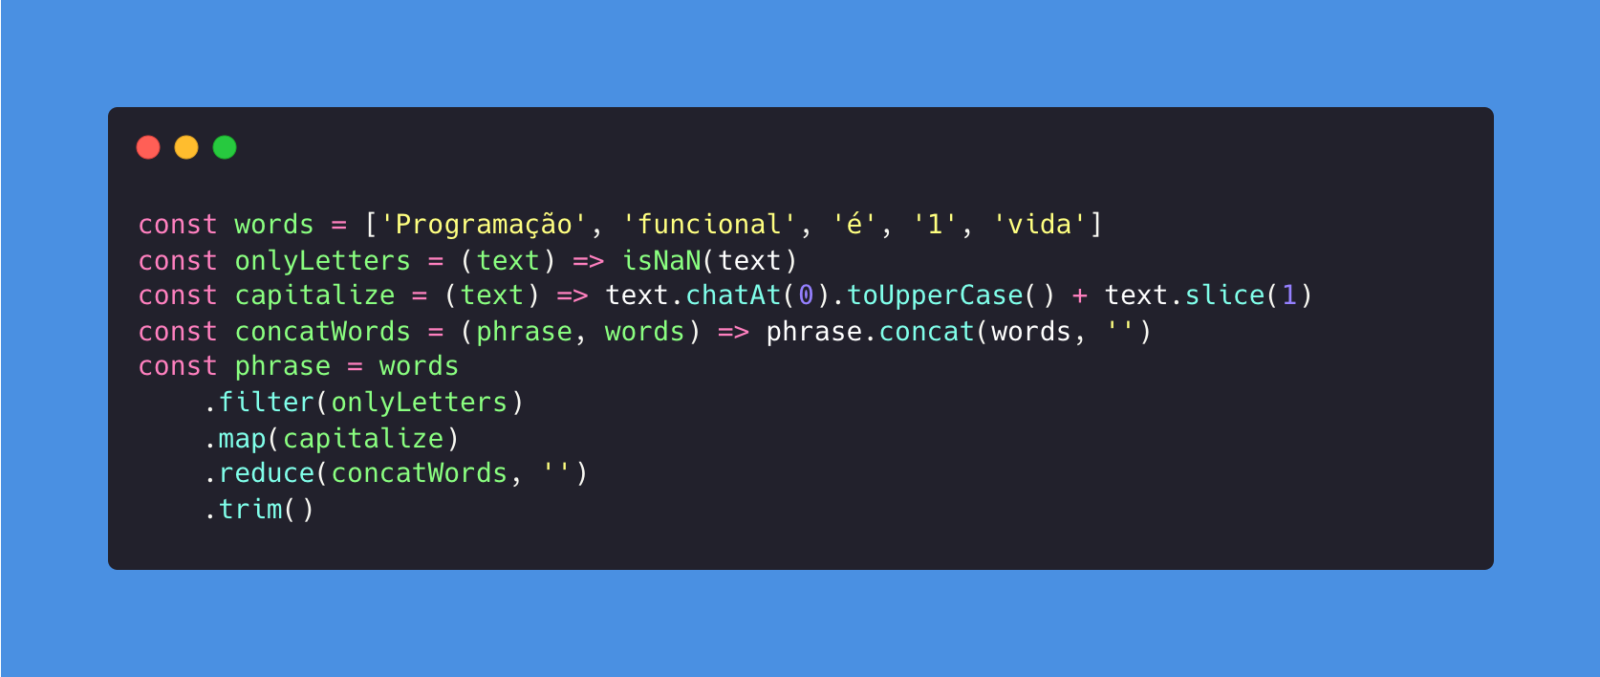 Print de uma imagem em fundo preto e azul de linguagem de código, com exemplos práticos de programação funcional